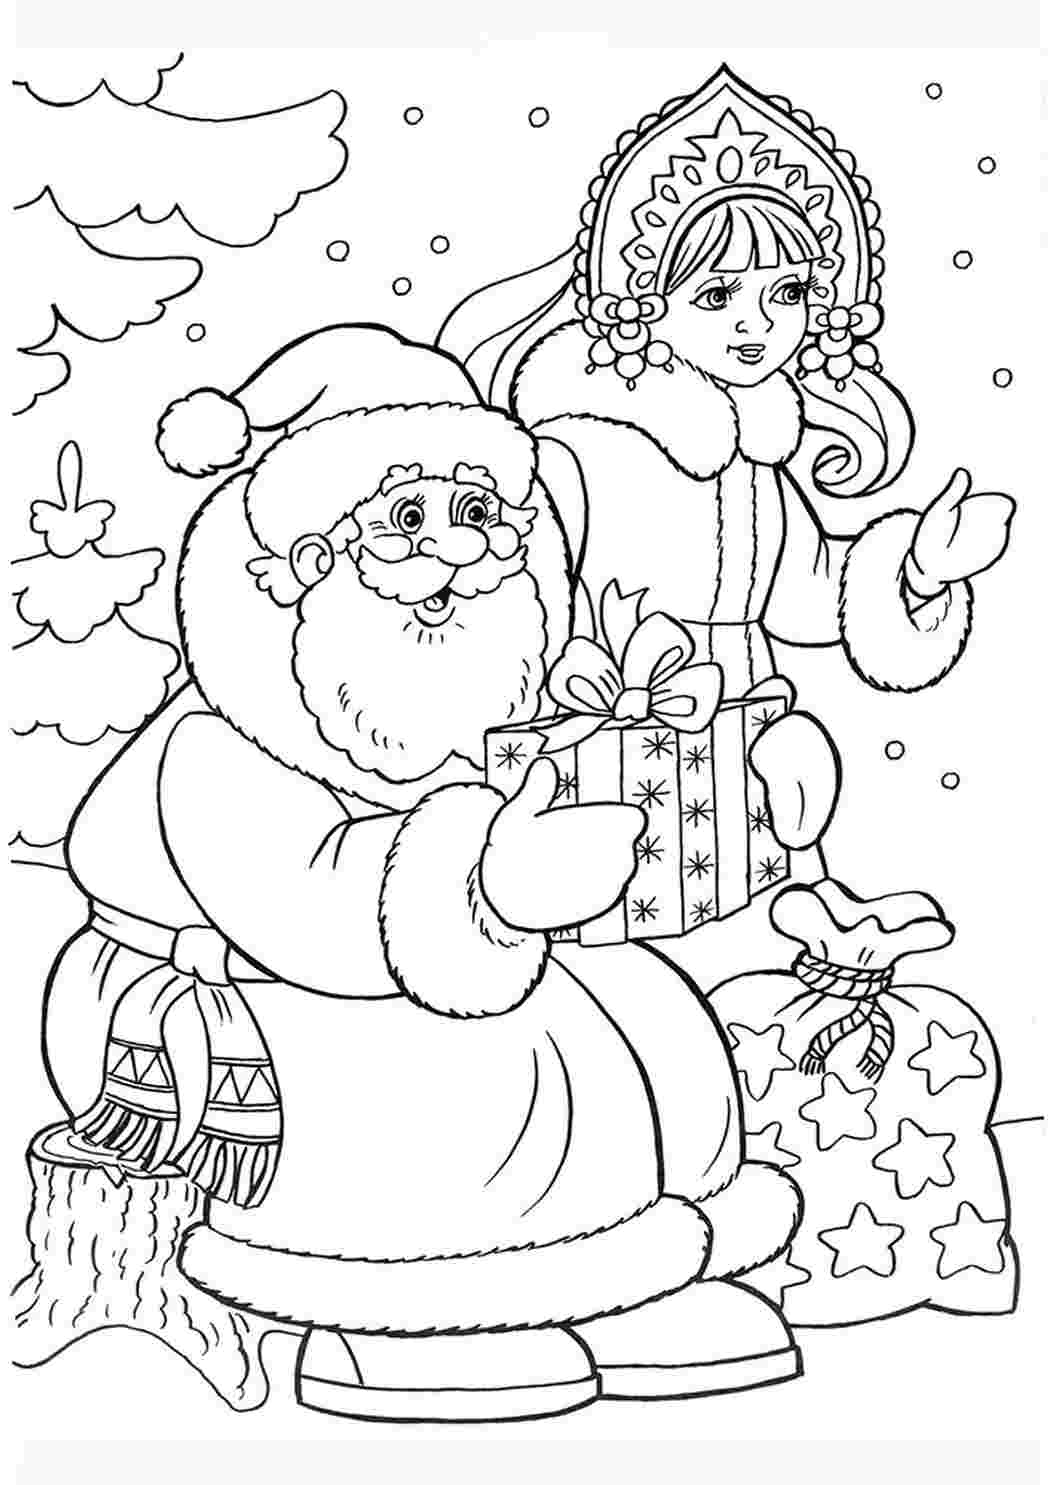 Дед Мороз и Снегурка на сломе стереотипов